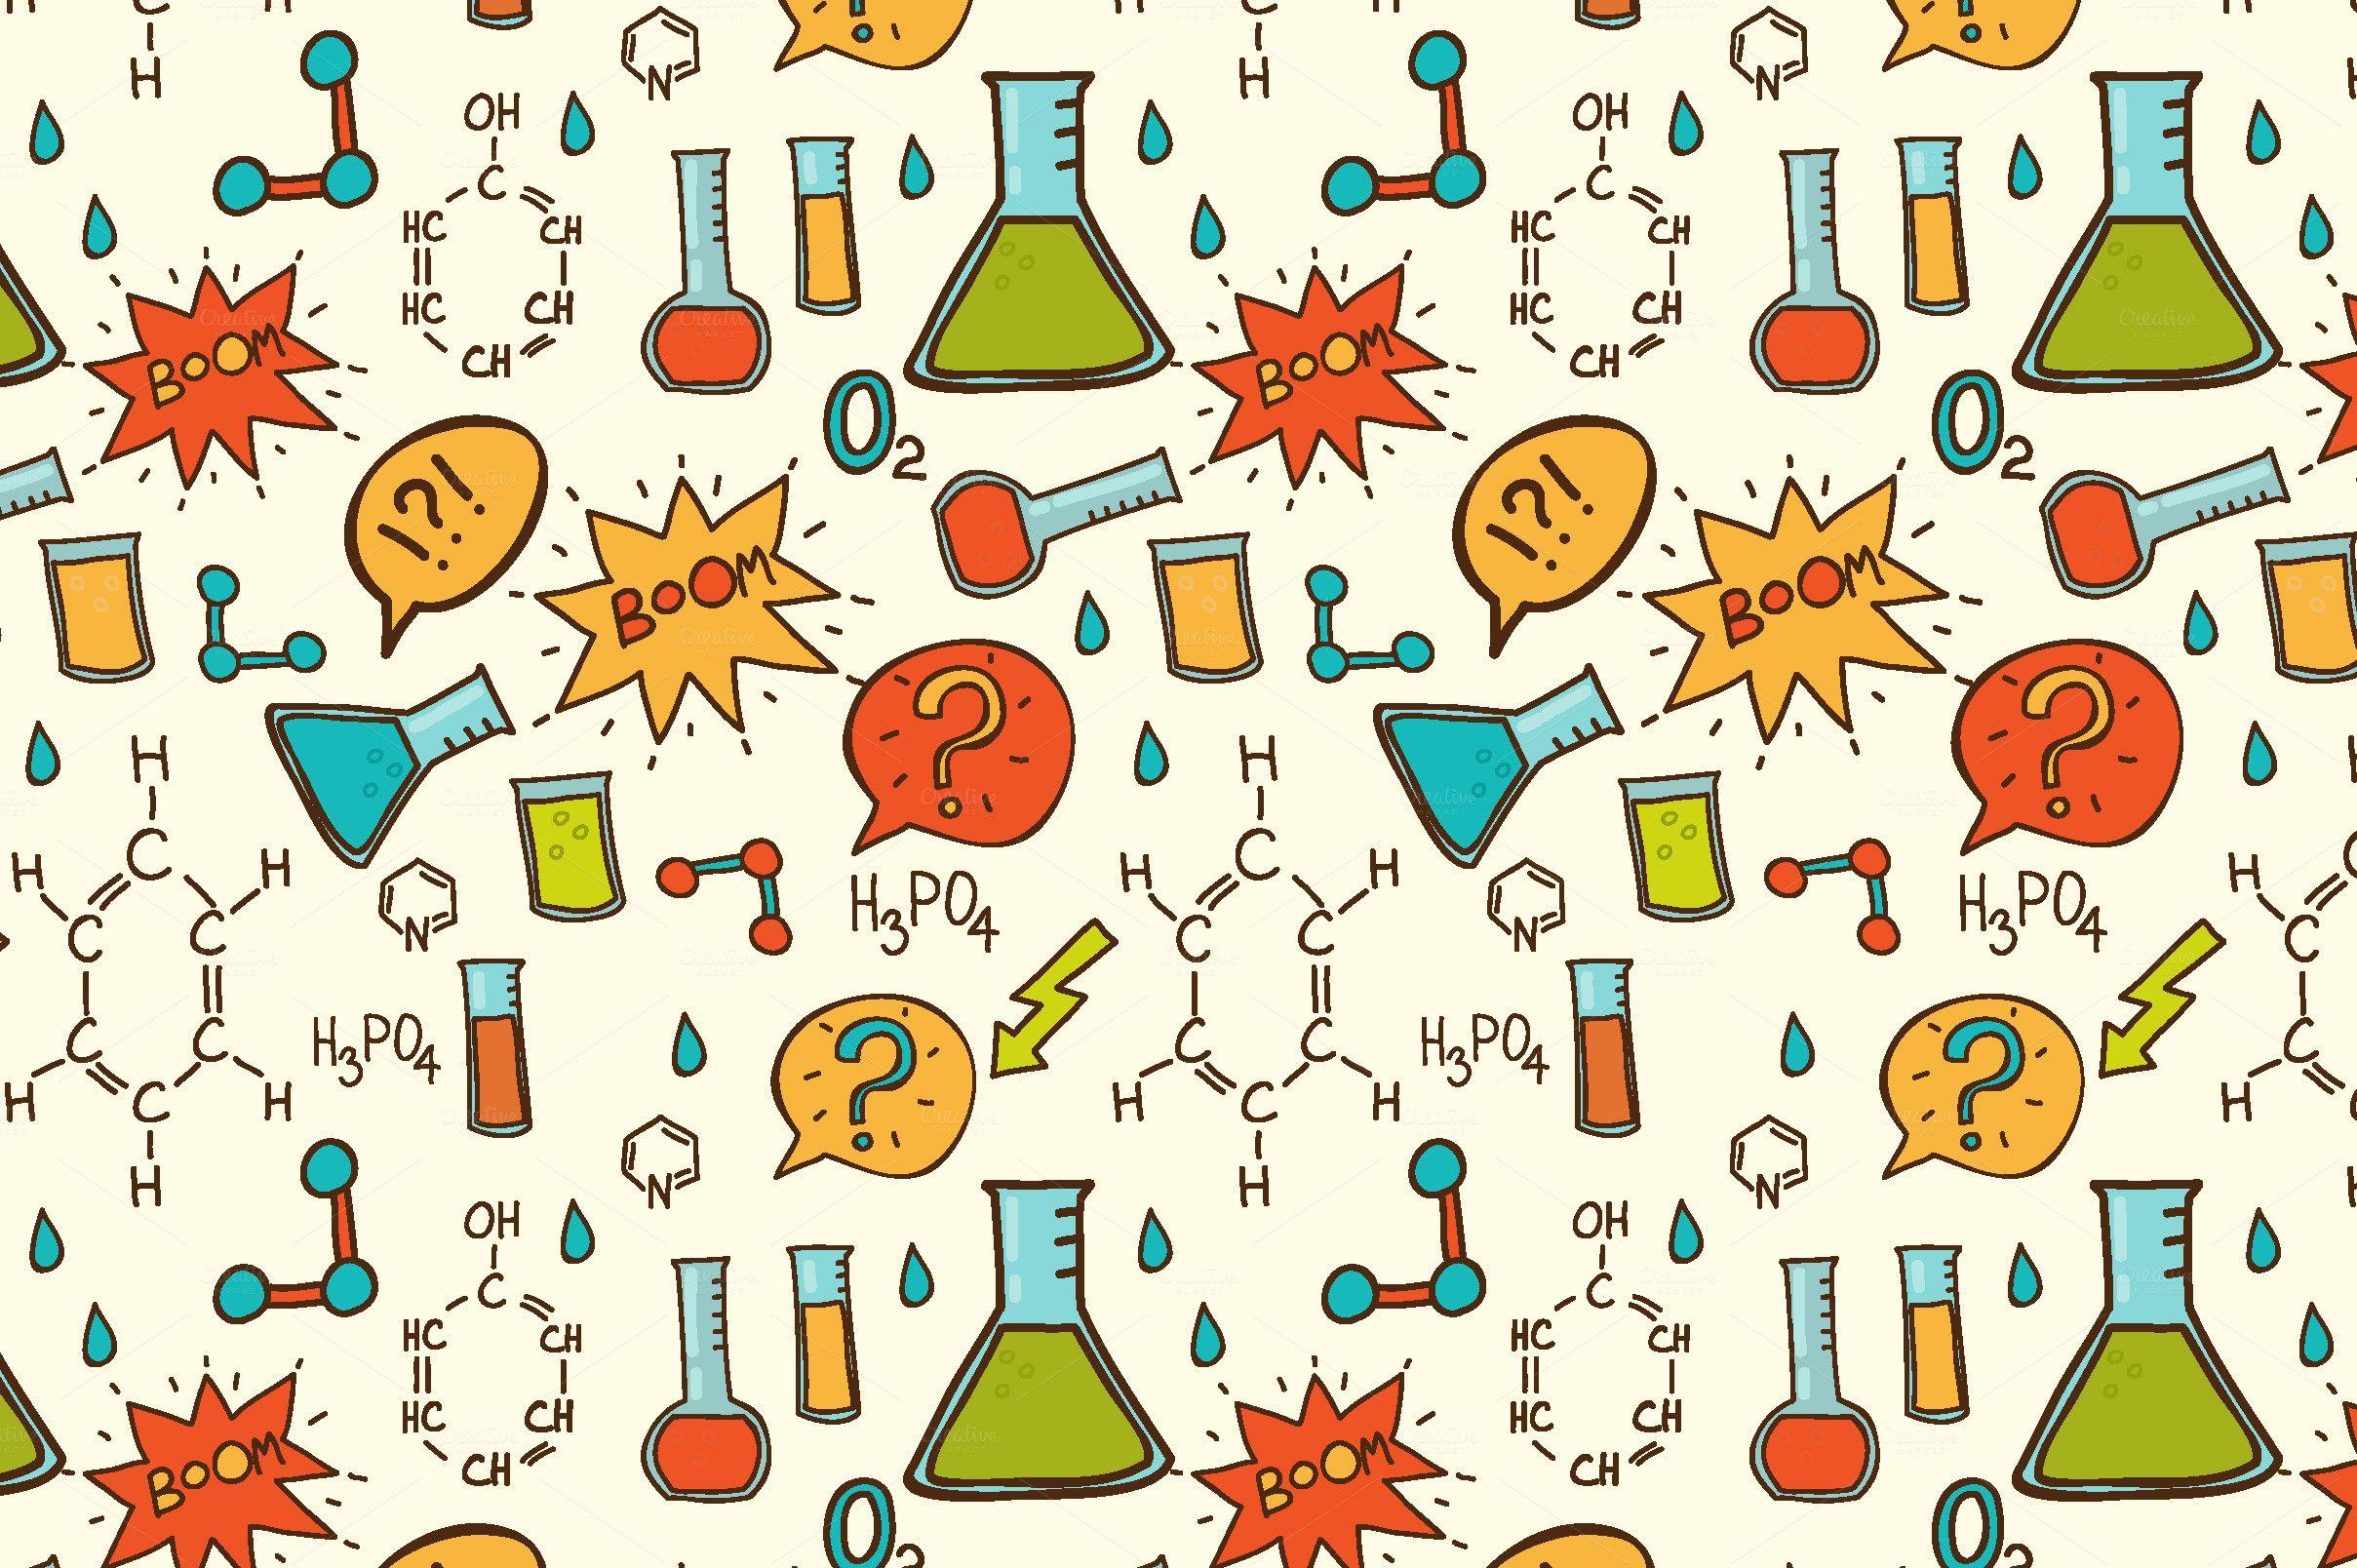 Cute Chemistry Wallpapers - Top Những Hình Ảnh Đẹp